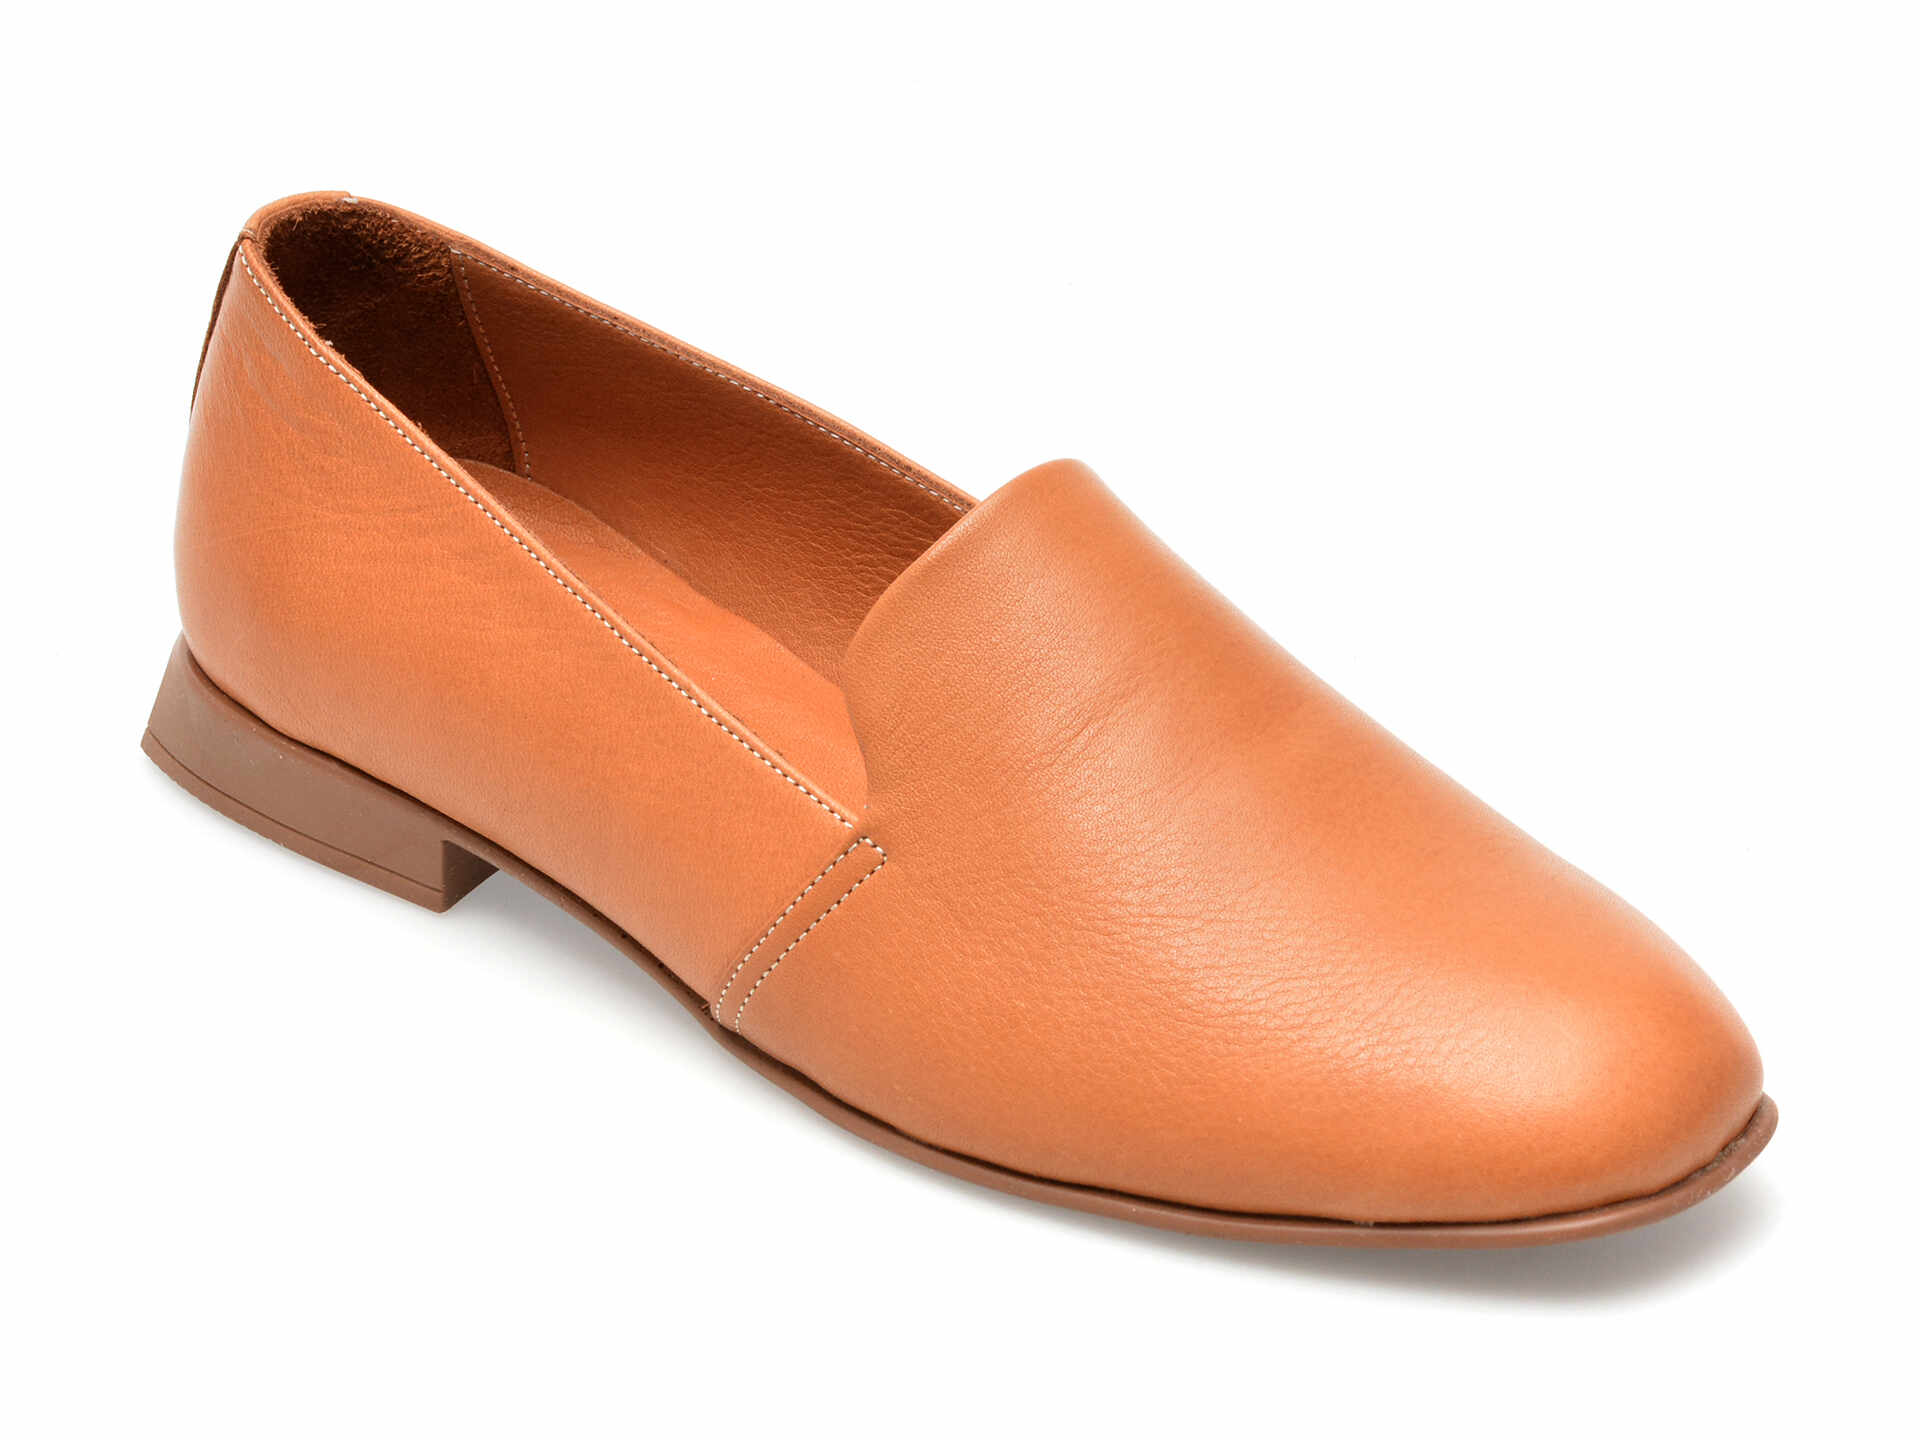 Pantofi GRYXX maro, 10775, din piele naturala